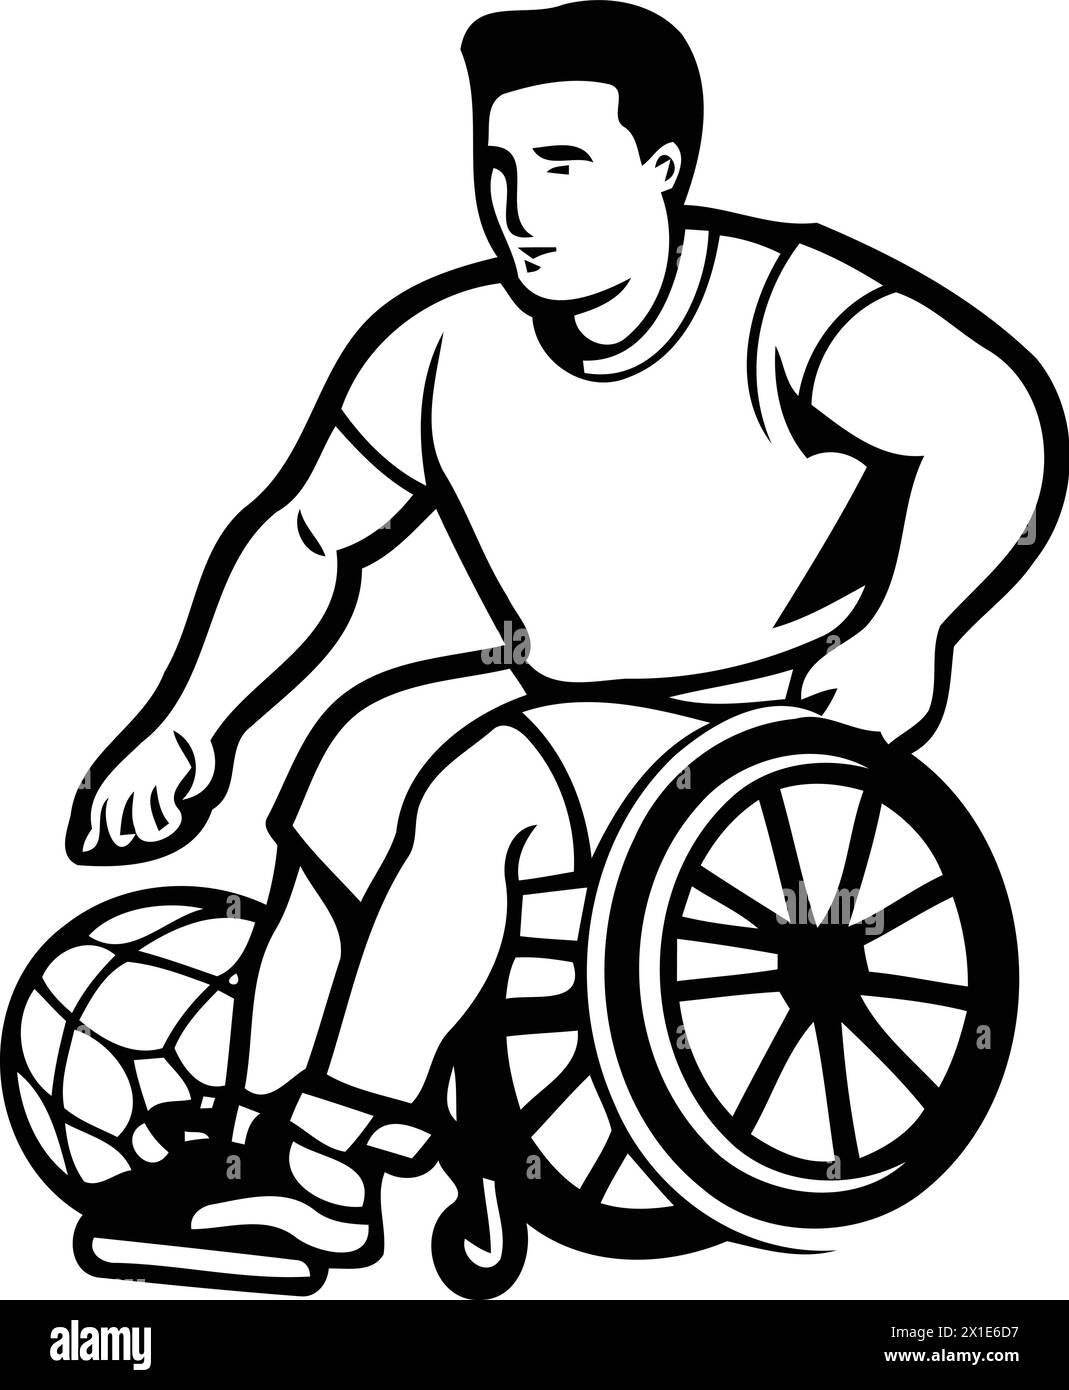 Wheelchair basketball player vector logo design template. Wheelchair basketball player icon Stock Vector